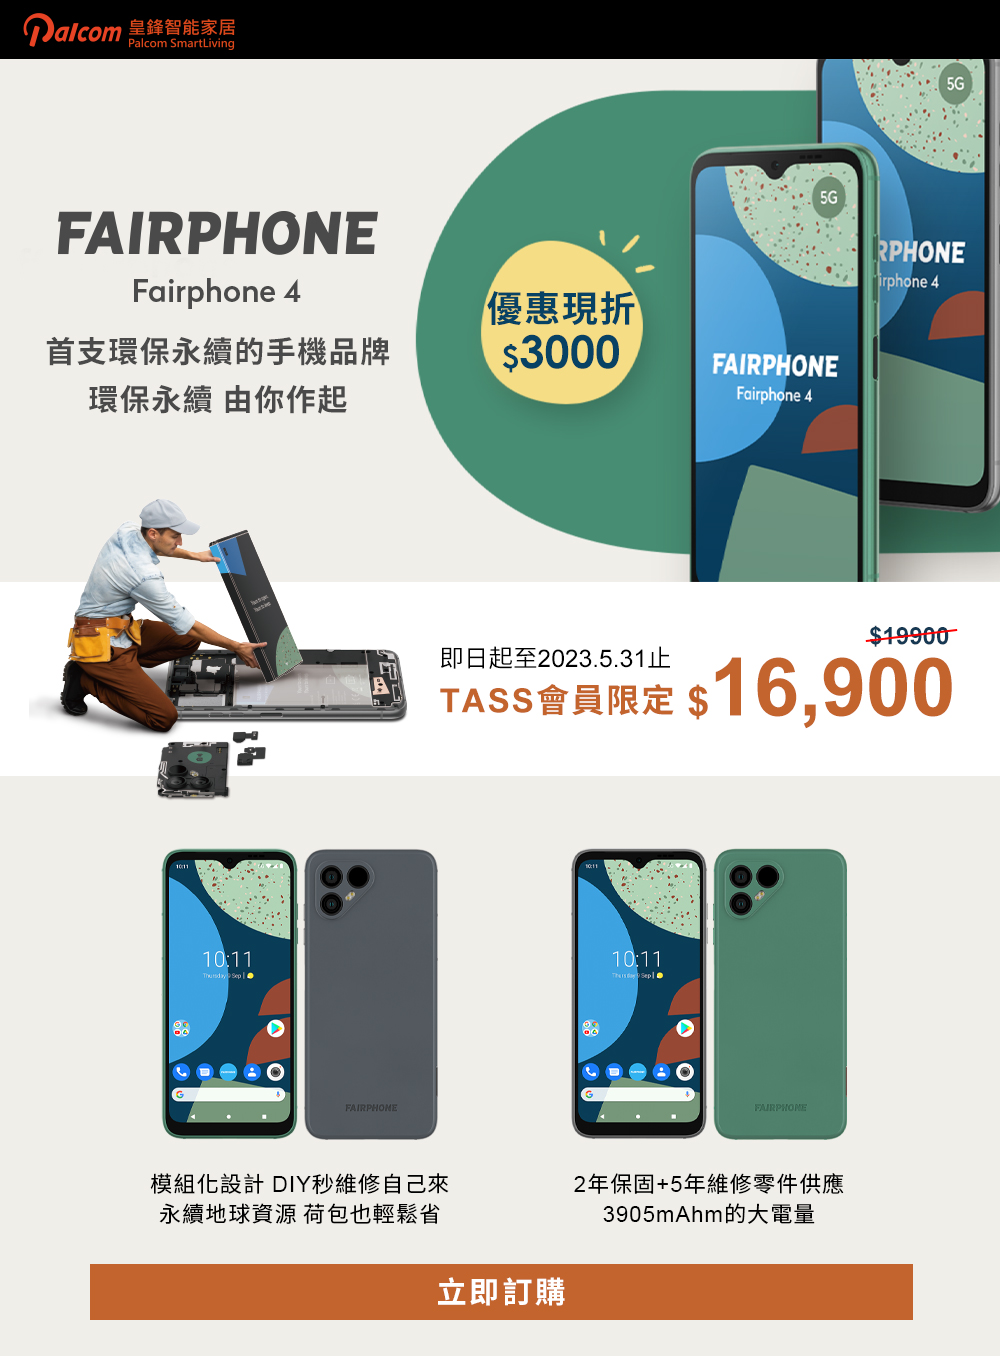 【TASS專屬】全球第一個公平貿易、環境永續的手機品牌_Fairphone